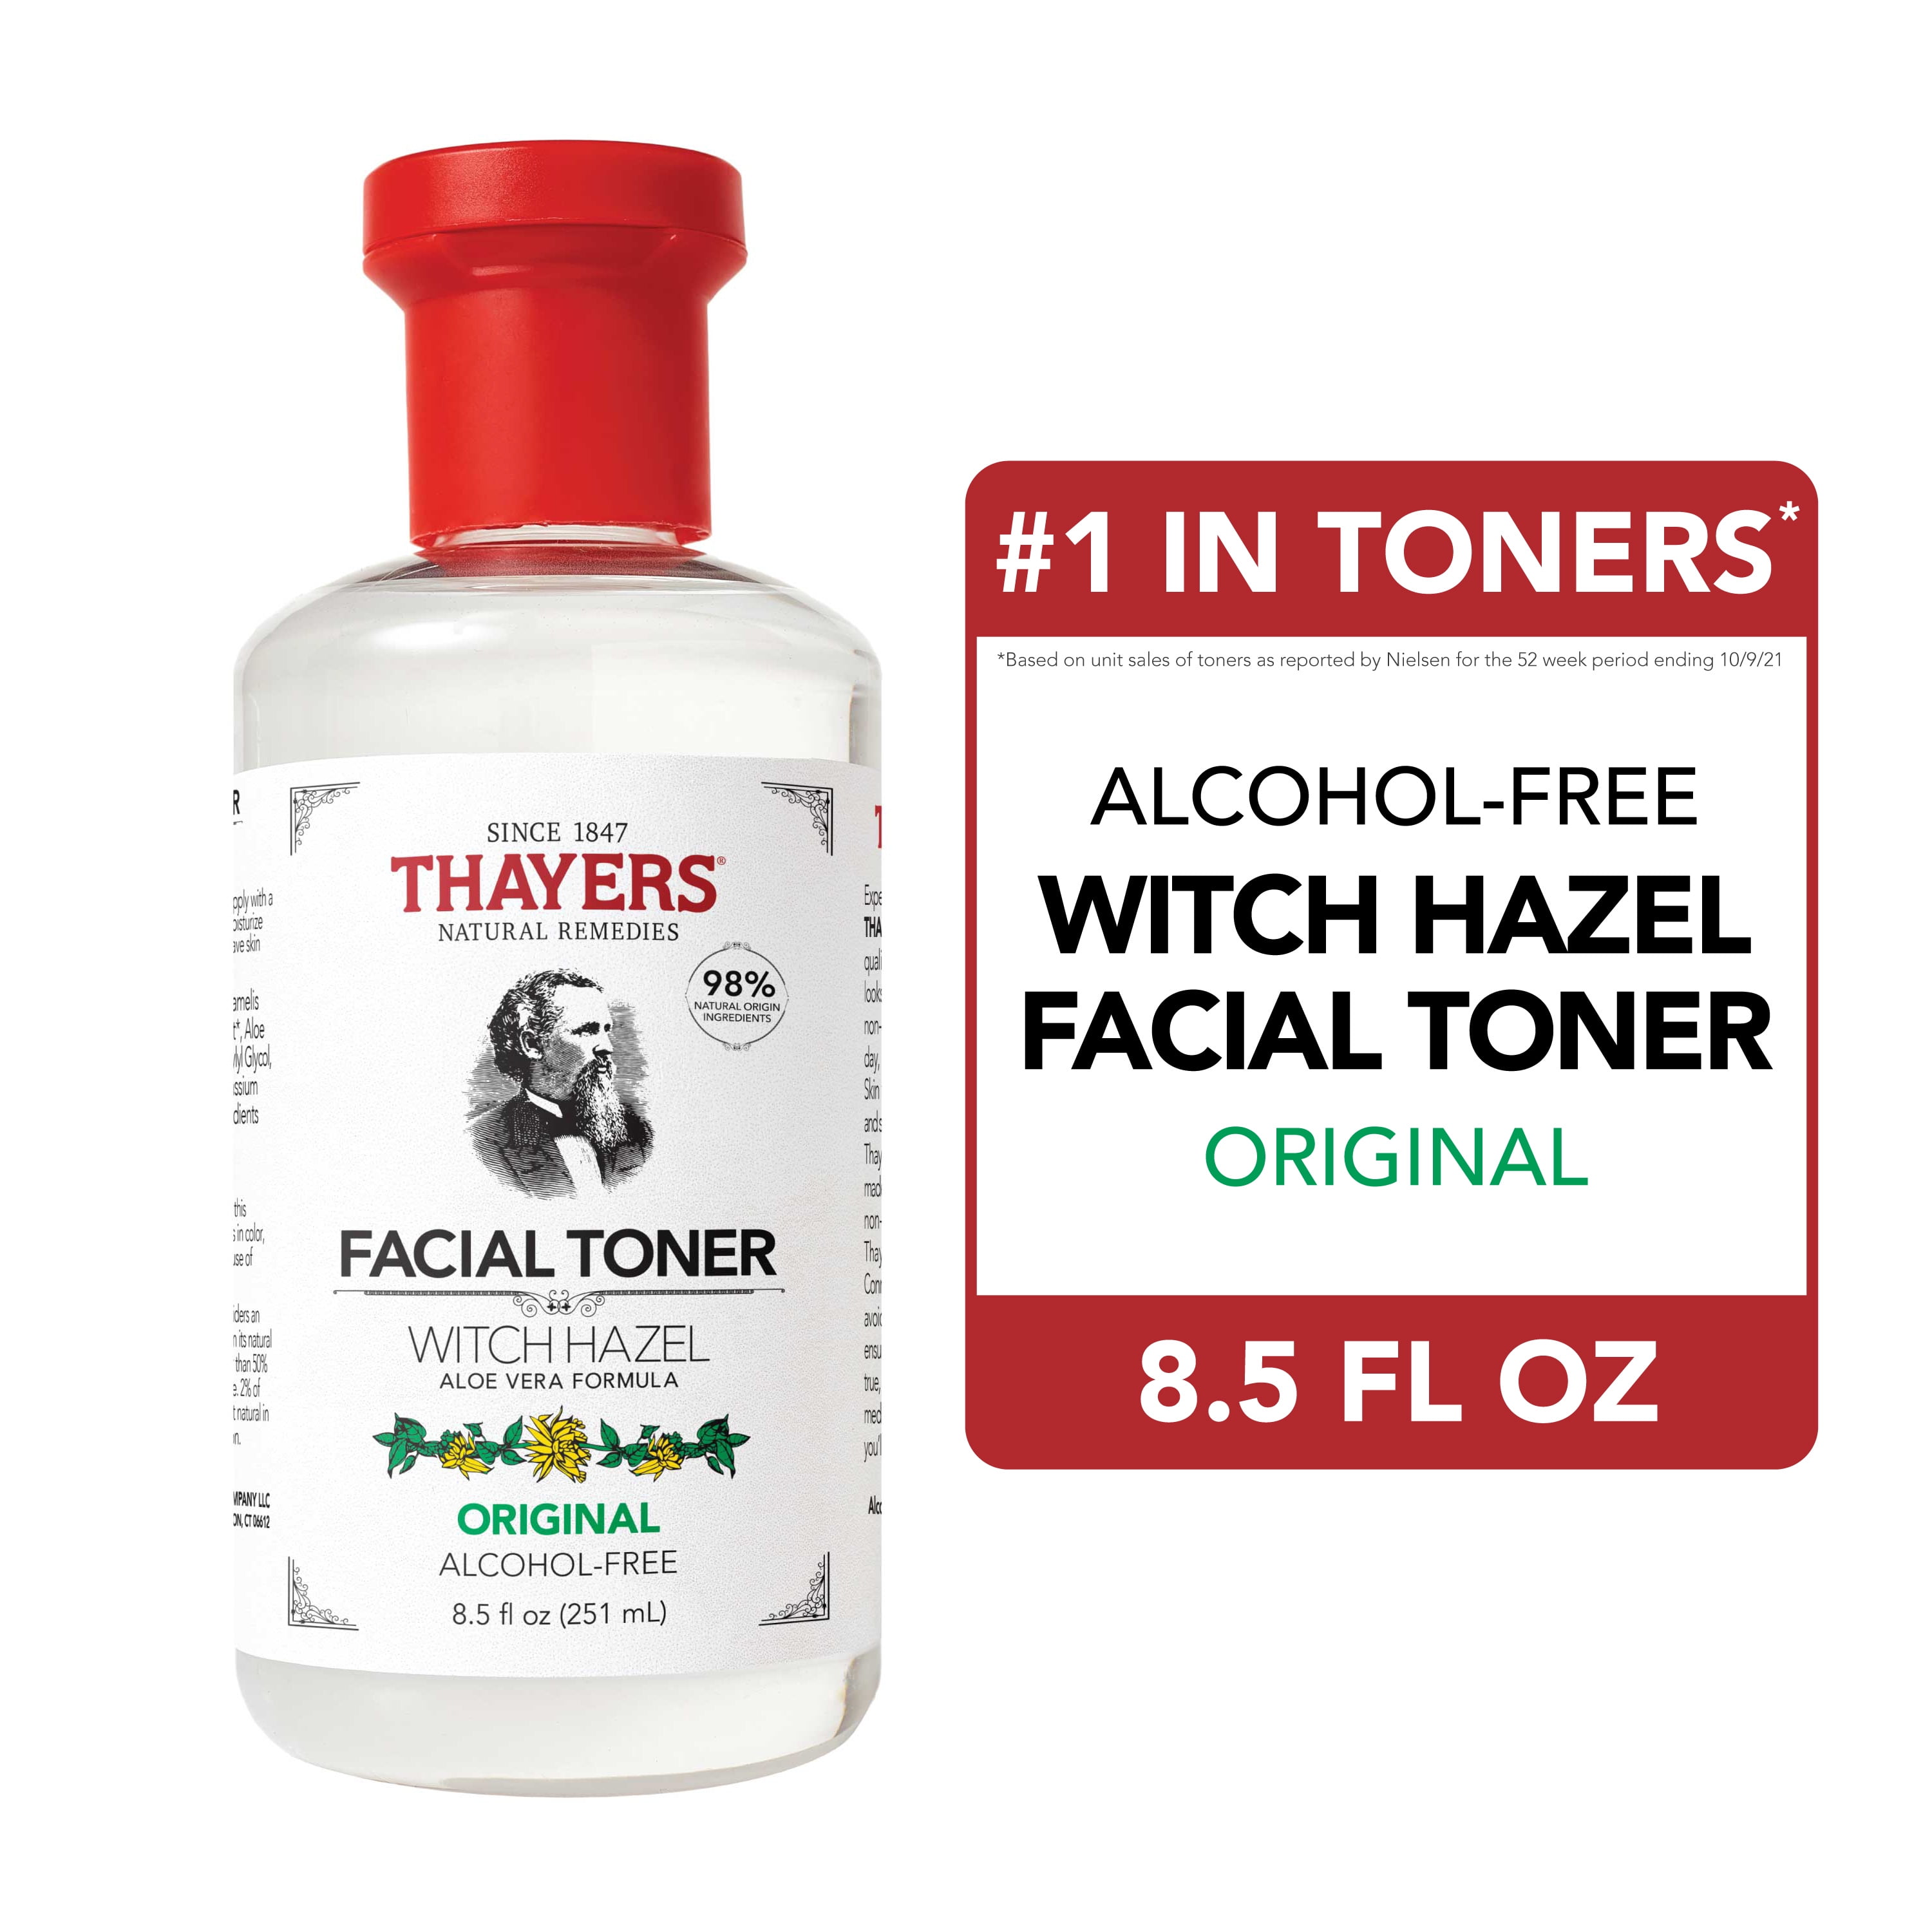 Thayers Alcohol-Free Original Witch Hazel Facial Toner, 8.5 oz